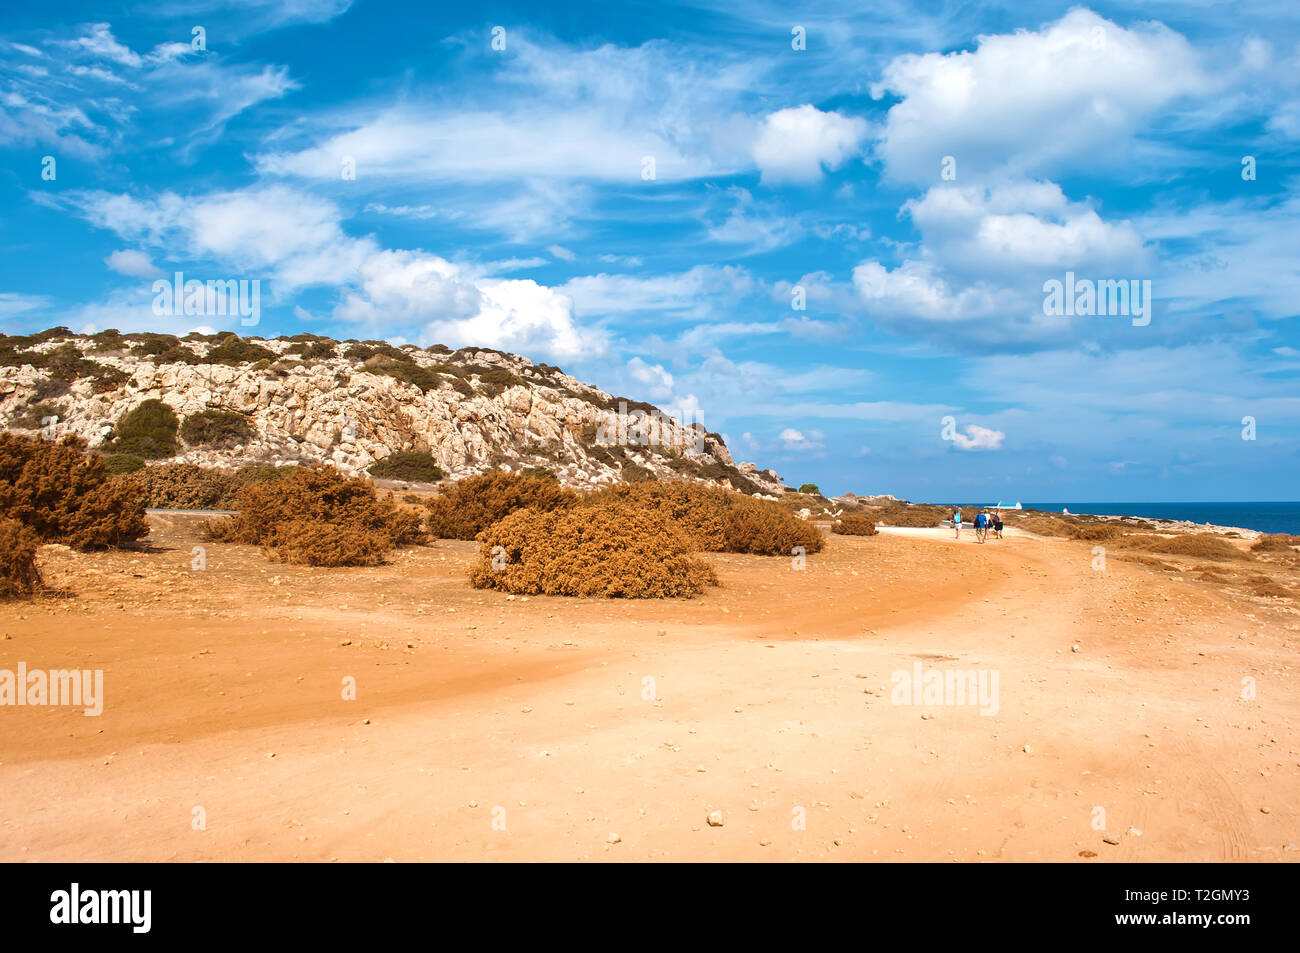 Bild von rauhem Kalkstein Küste in der Nähe von Kap Greco, Zypern. Cloudscape mit vielen weißen Wolken im Himmel, kargen orange sandigen Weg. Warmer Tag im Herbst Stockfoto